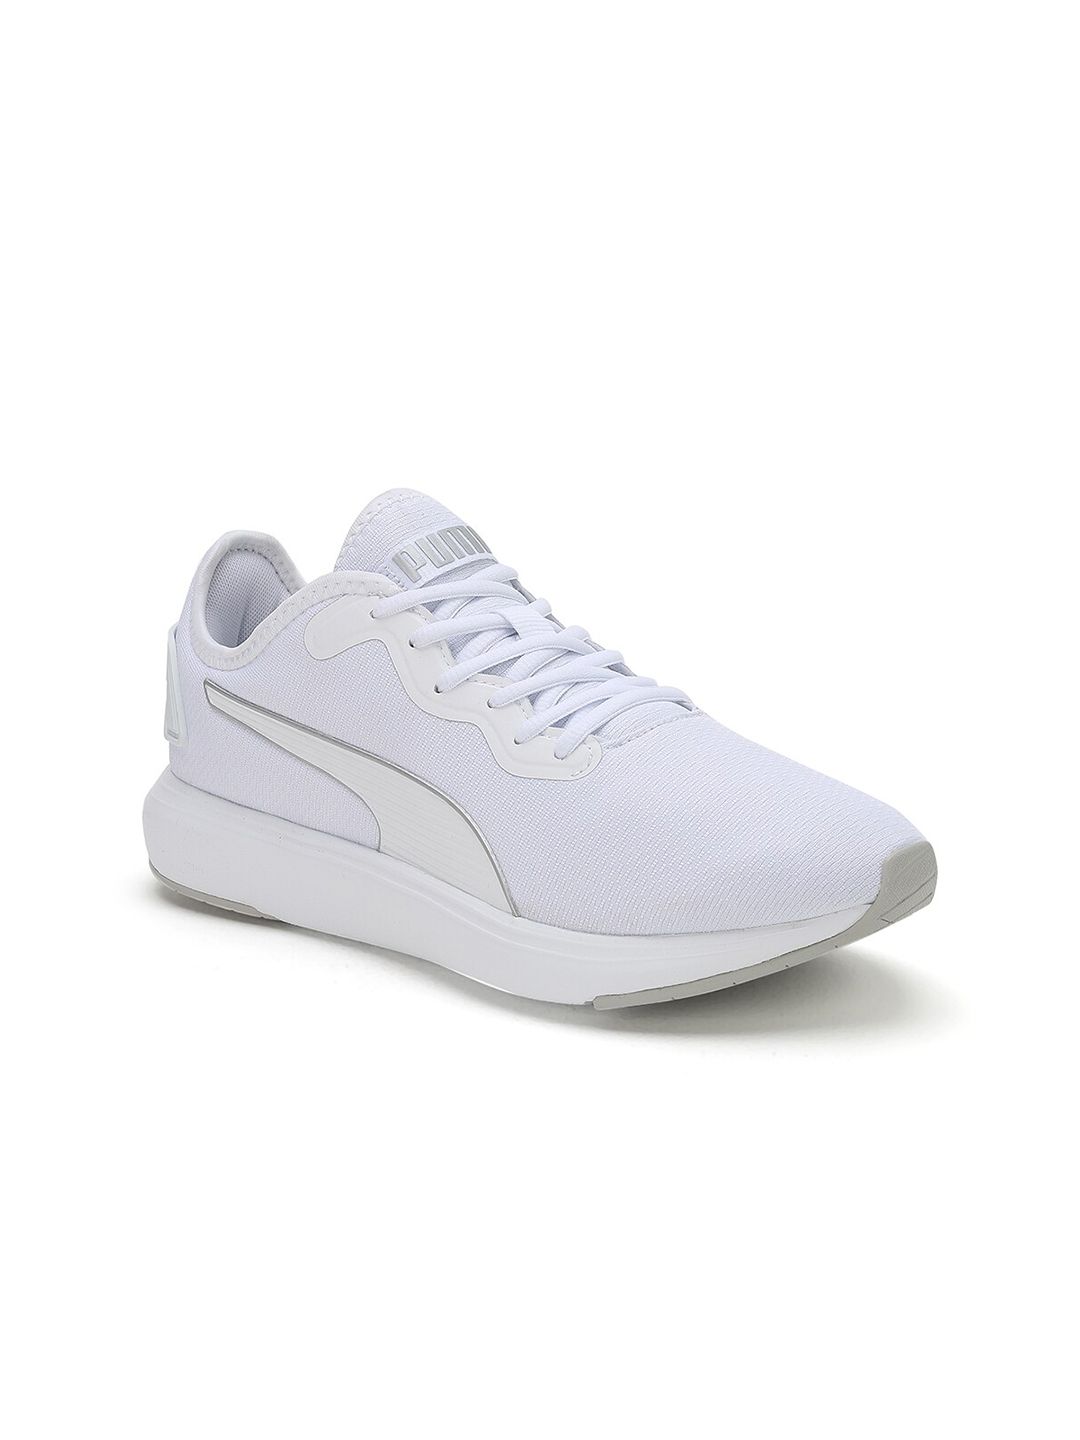 Puma Unisex White Textile Sports Shoes 37616715-Puma White-Metallic Silver Price in India